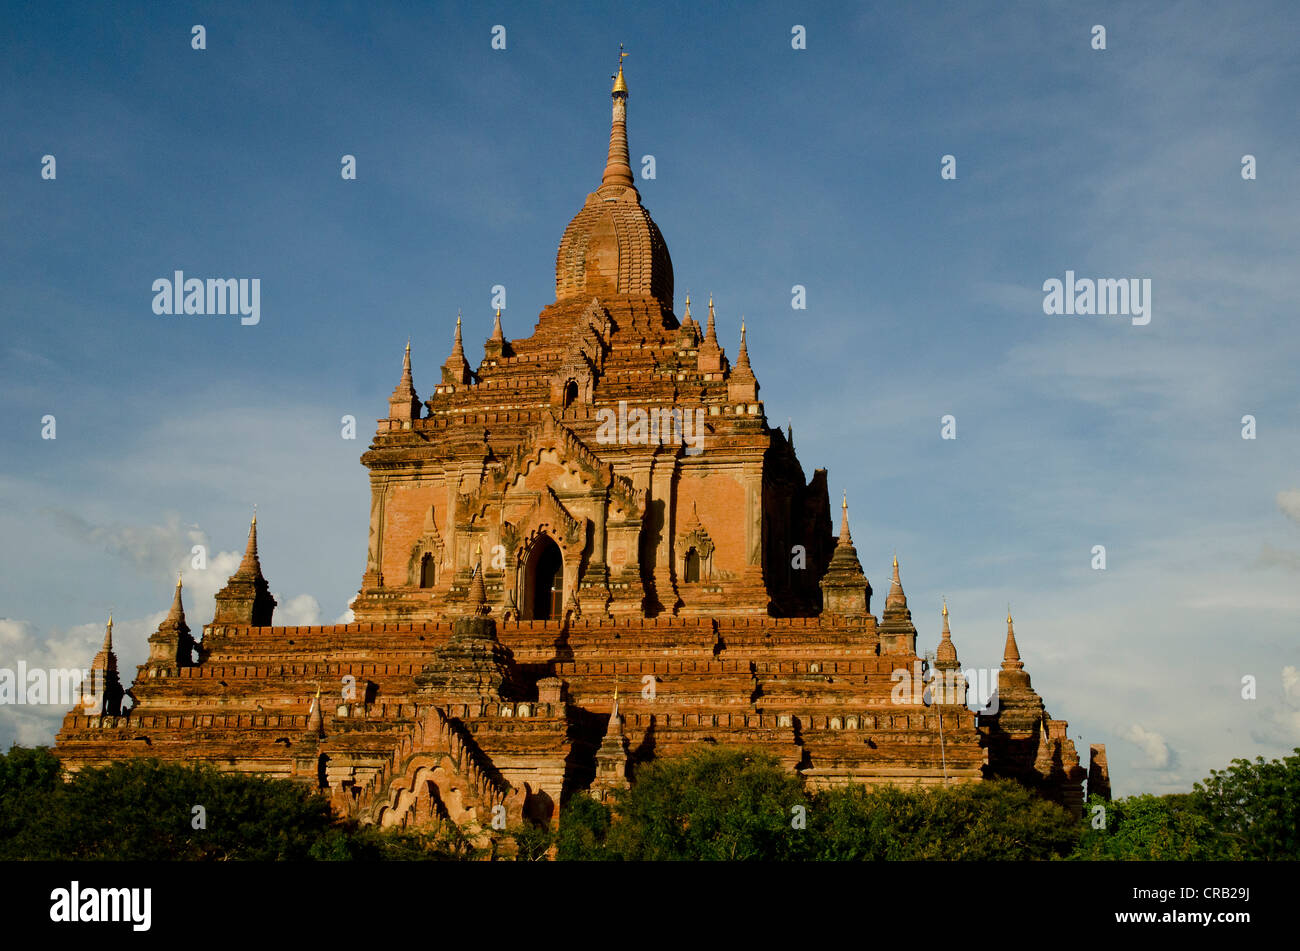 Tempio Htilominlo, del XIII secolo, uno degli ultimi grandi templi costruiti a Bagan prima della caduta del regno, Old Bagan, pagane Foto Stock